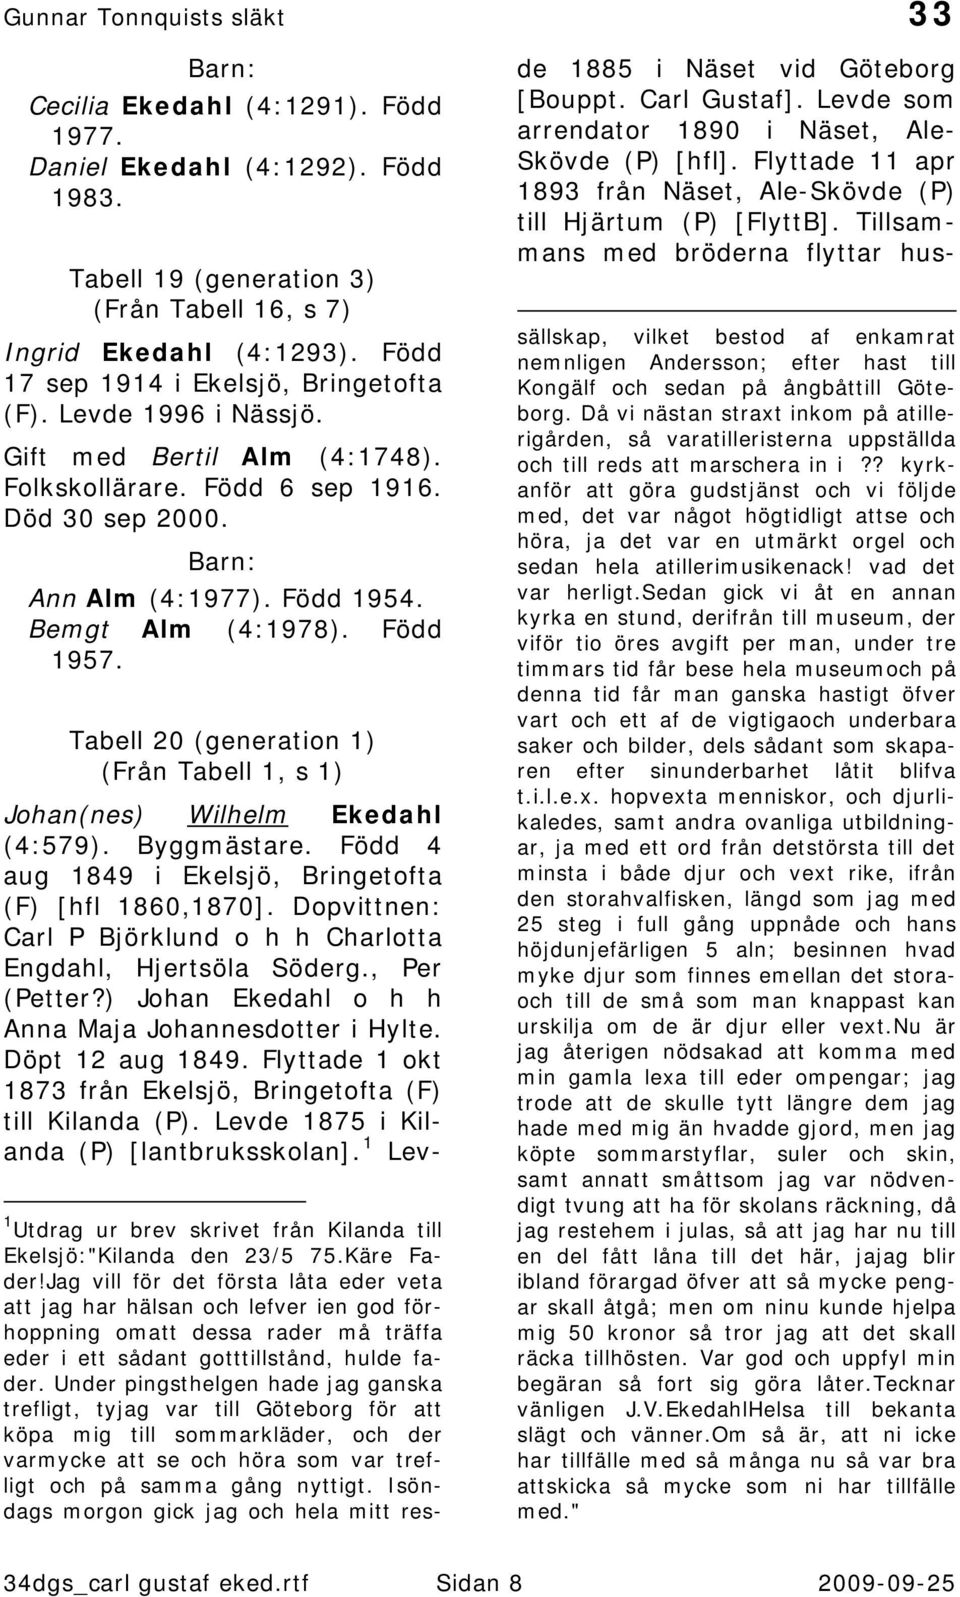 Tabell 20 (generation 1) (Från Tabell 1, s 1) Johan(nes) Wilhelm Ekedahl (4:579). Byggmästare. Född 4 aug 1849 i Ekelsjö, Bringetofta (F) [hfl 1860,1870].